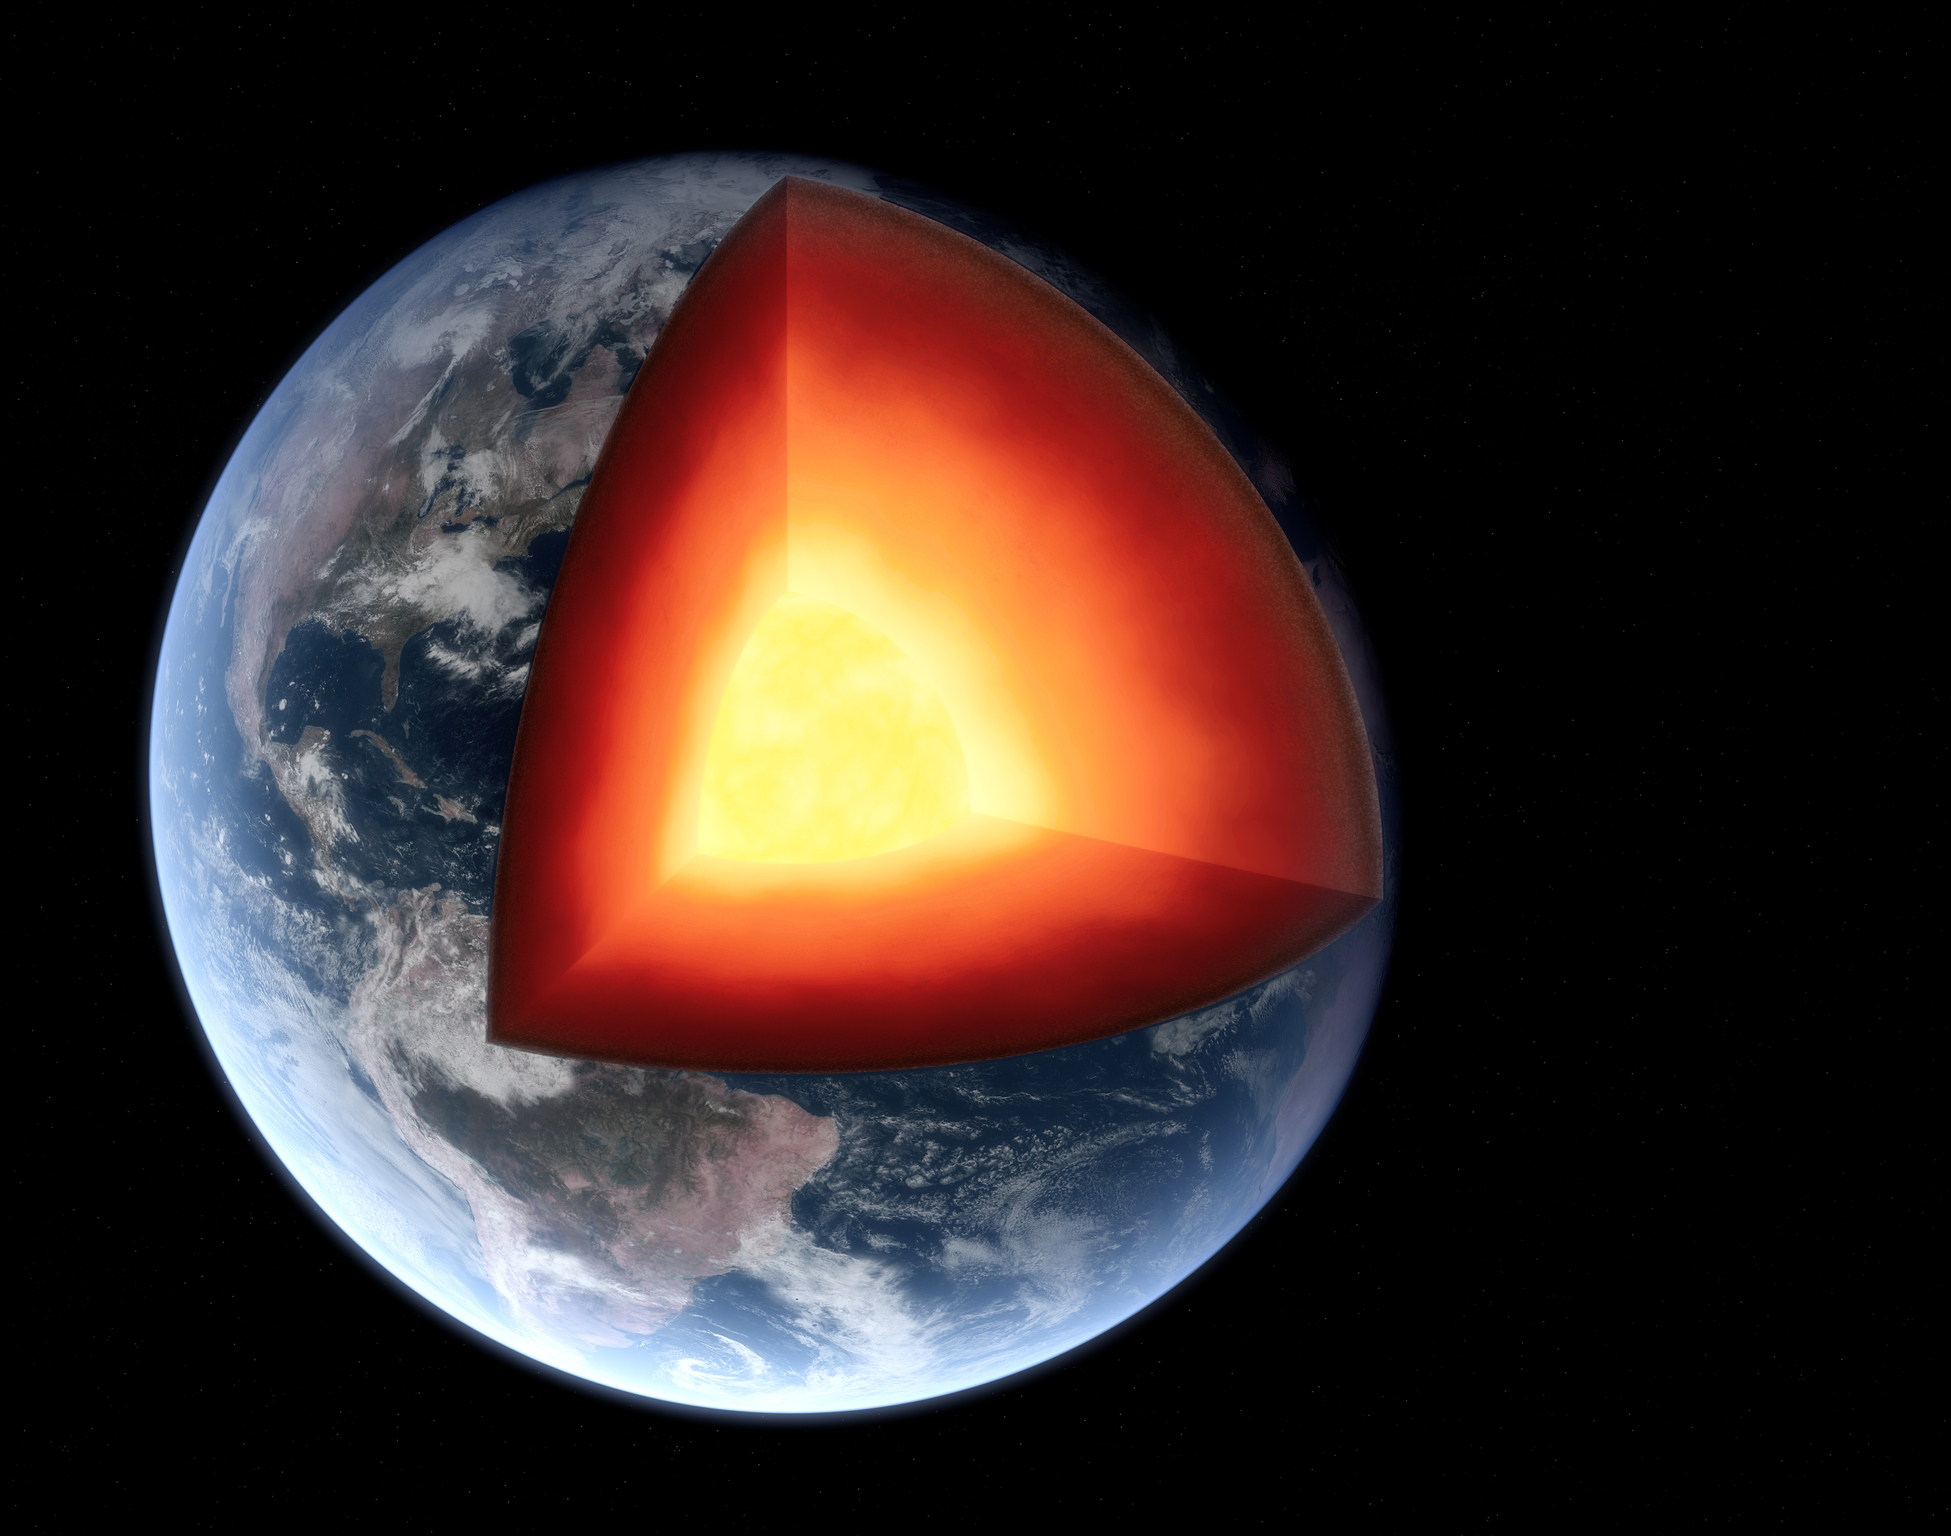 El núcleo interno del planeta Tierra gira más rápido que el resto del planeta. Pero parece que dejó de hacerlo